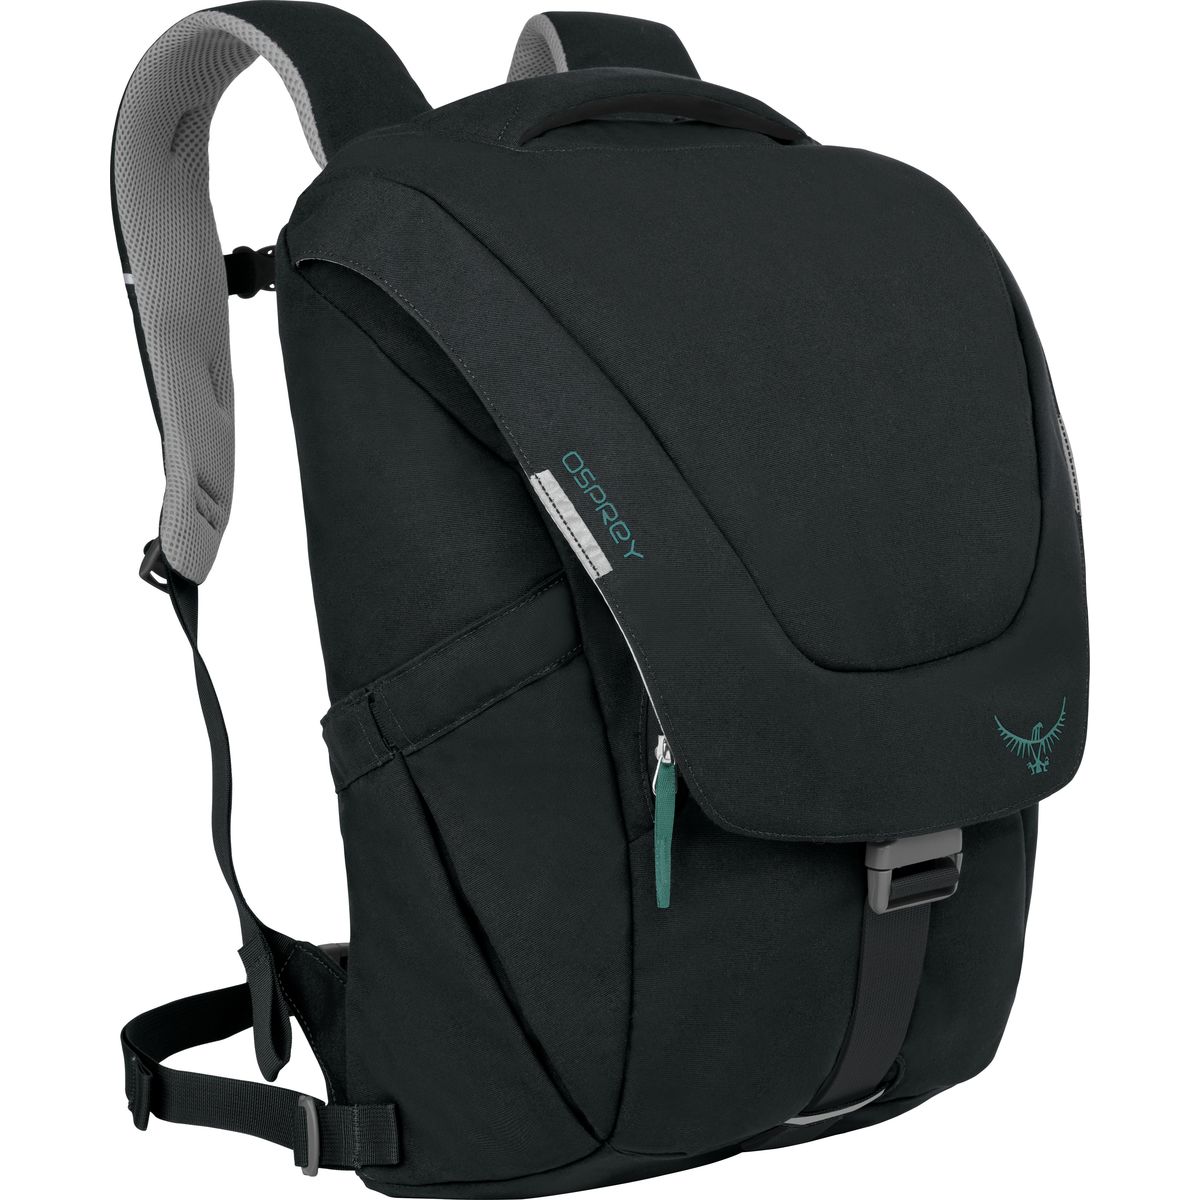 Osprey Packs Flapjill Backpack - 1281cu in - Women's Black, 